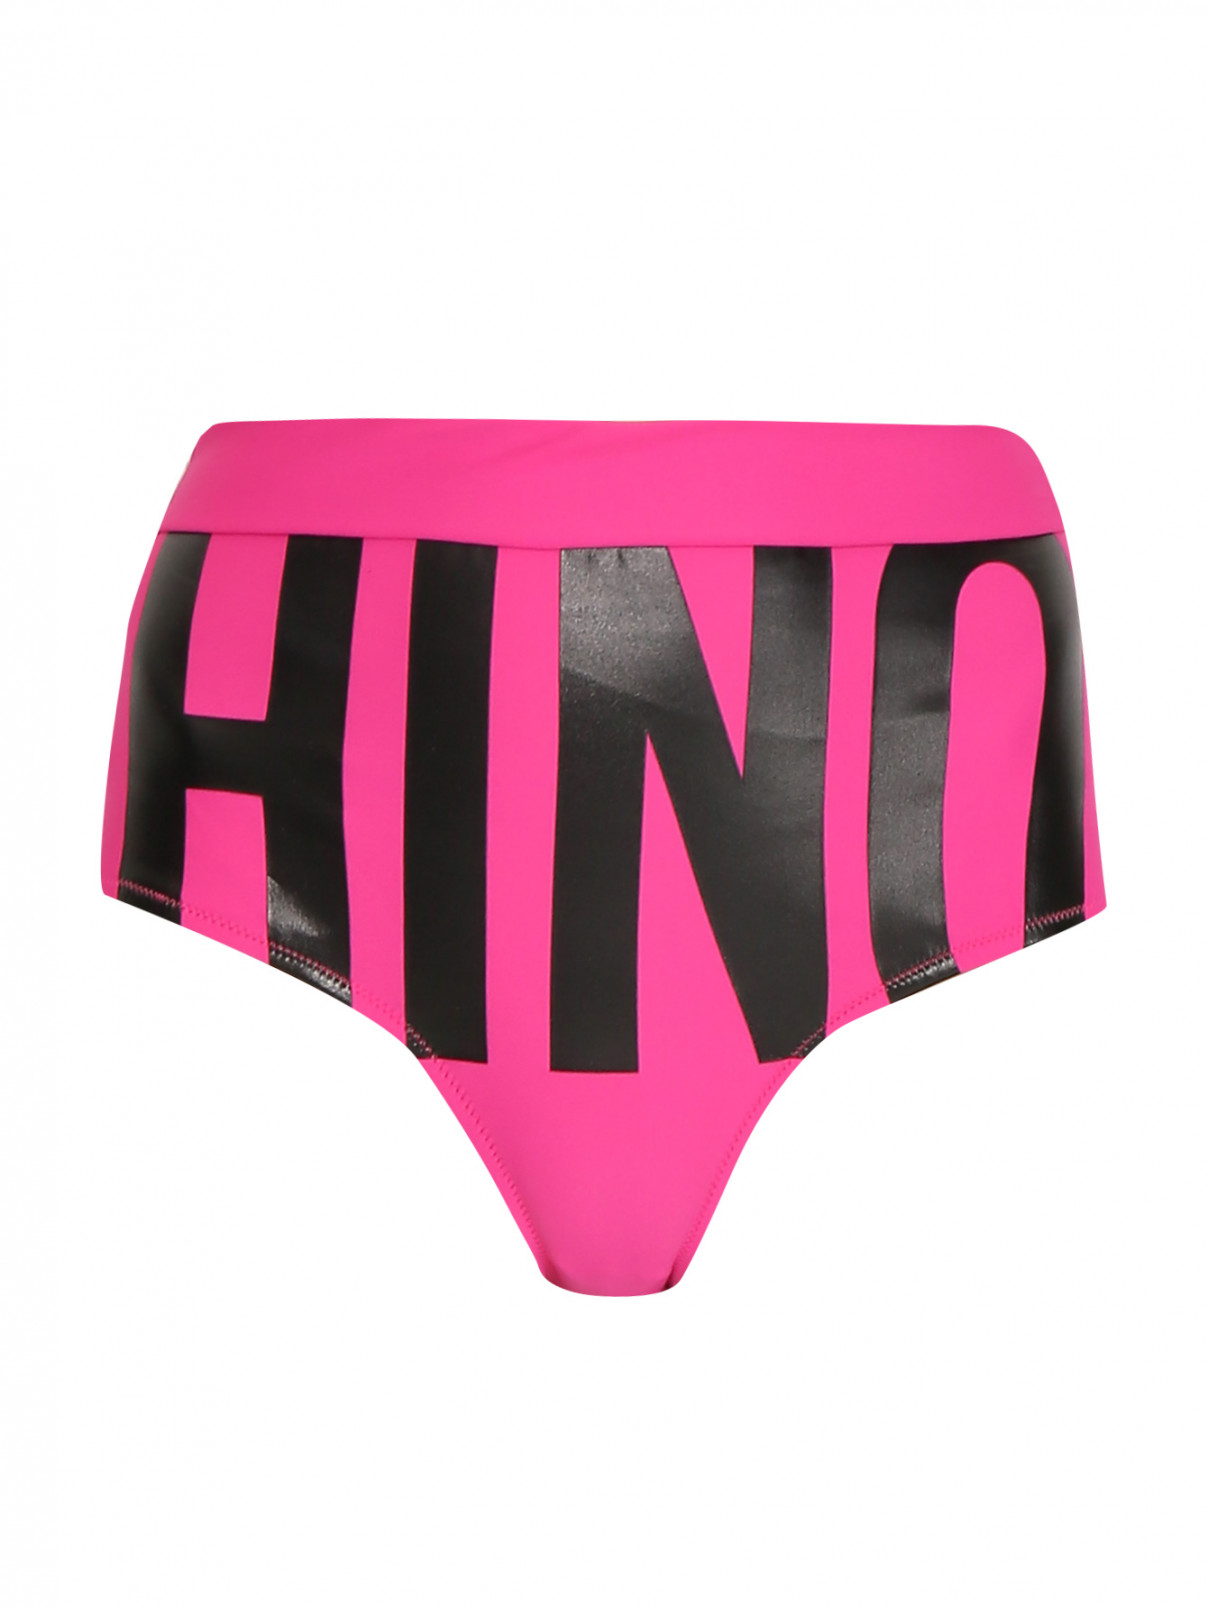 Купальник низ с контрастным принтом Moschino Swim  –  Общий вид  – Цвет:  Розовый